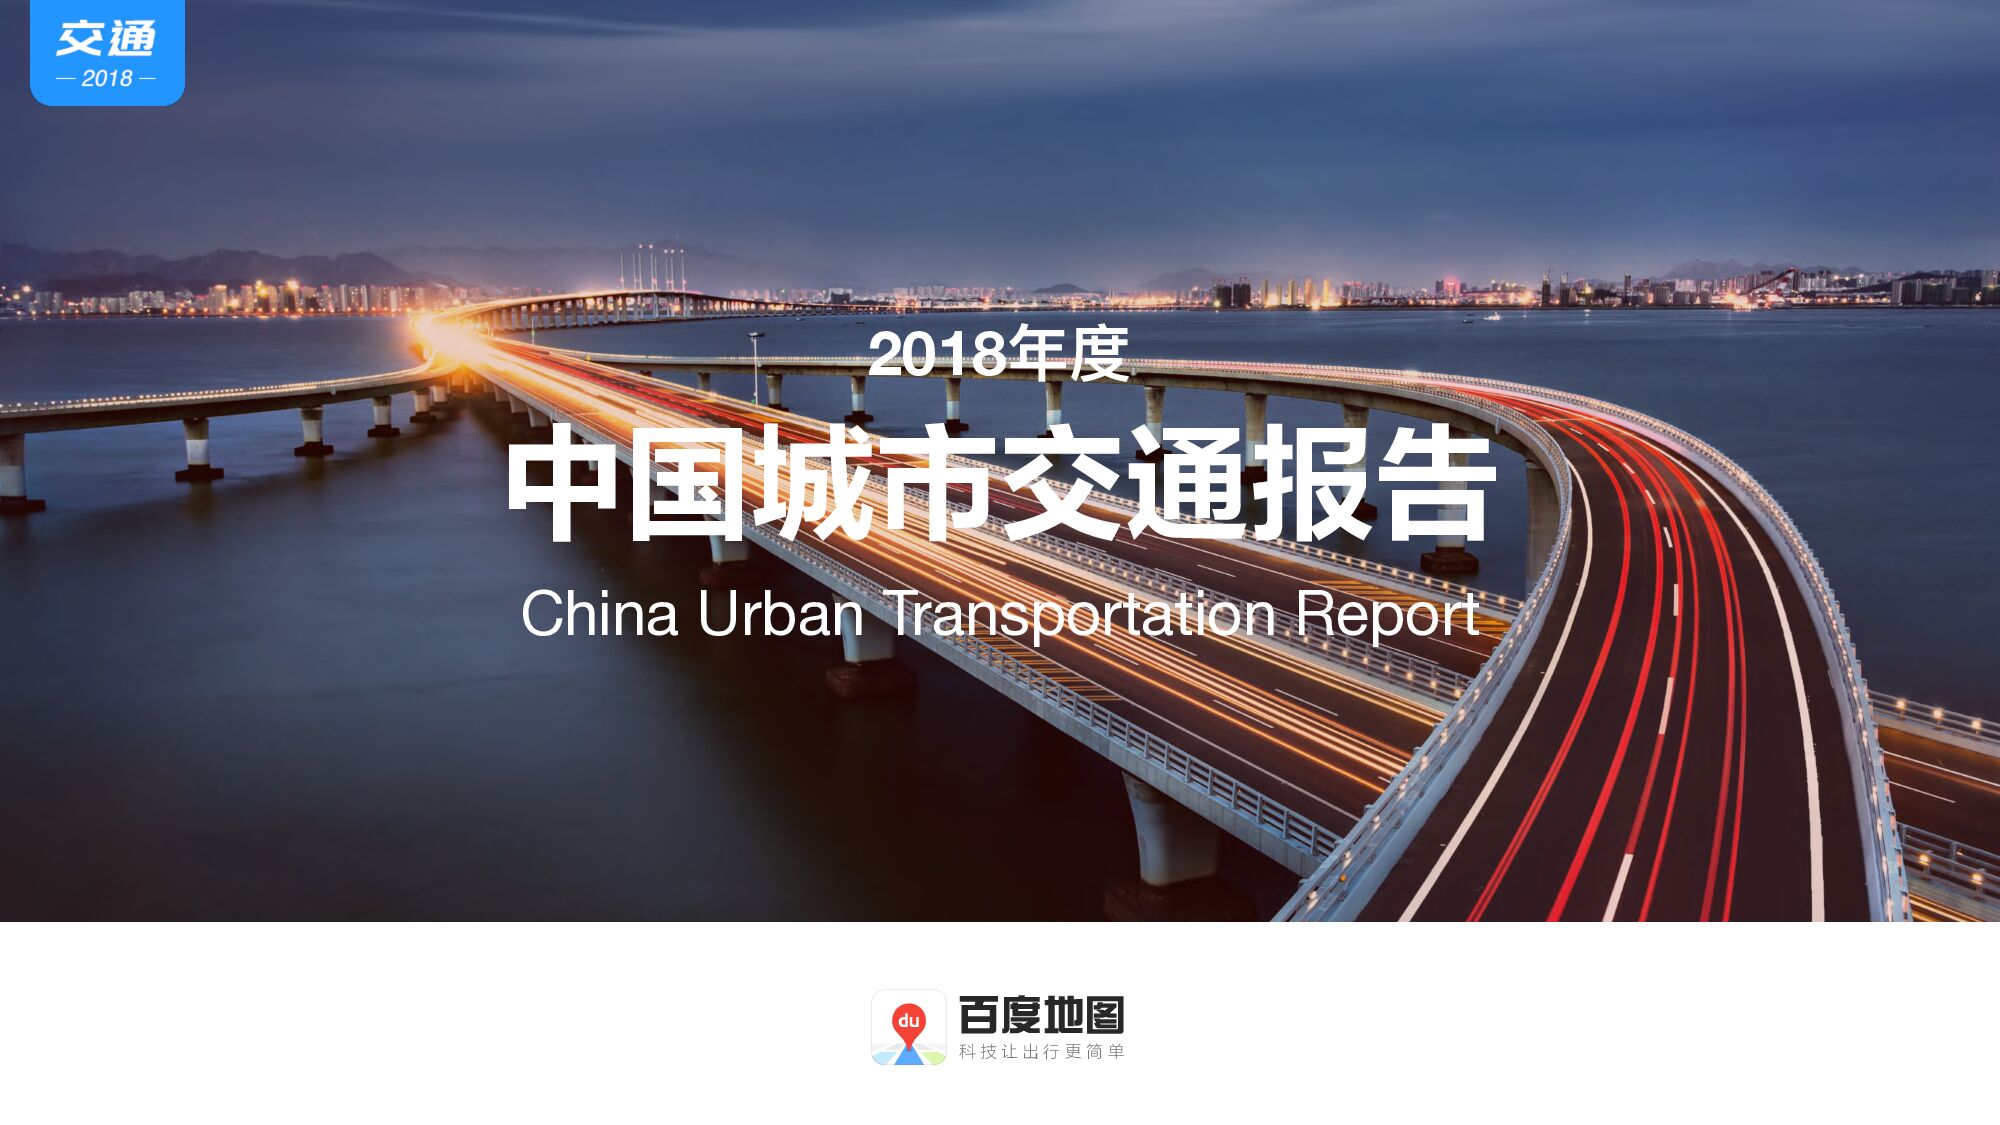 2018年度中国城市交通报告-百度地图-2019.1-81页